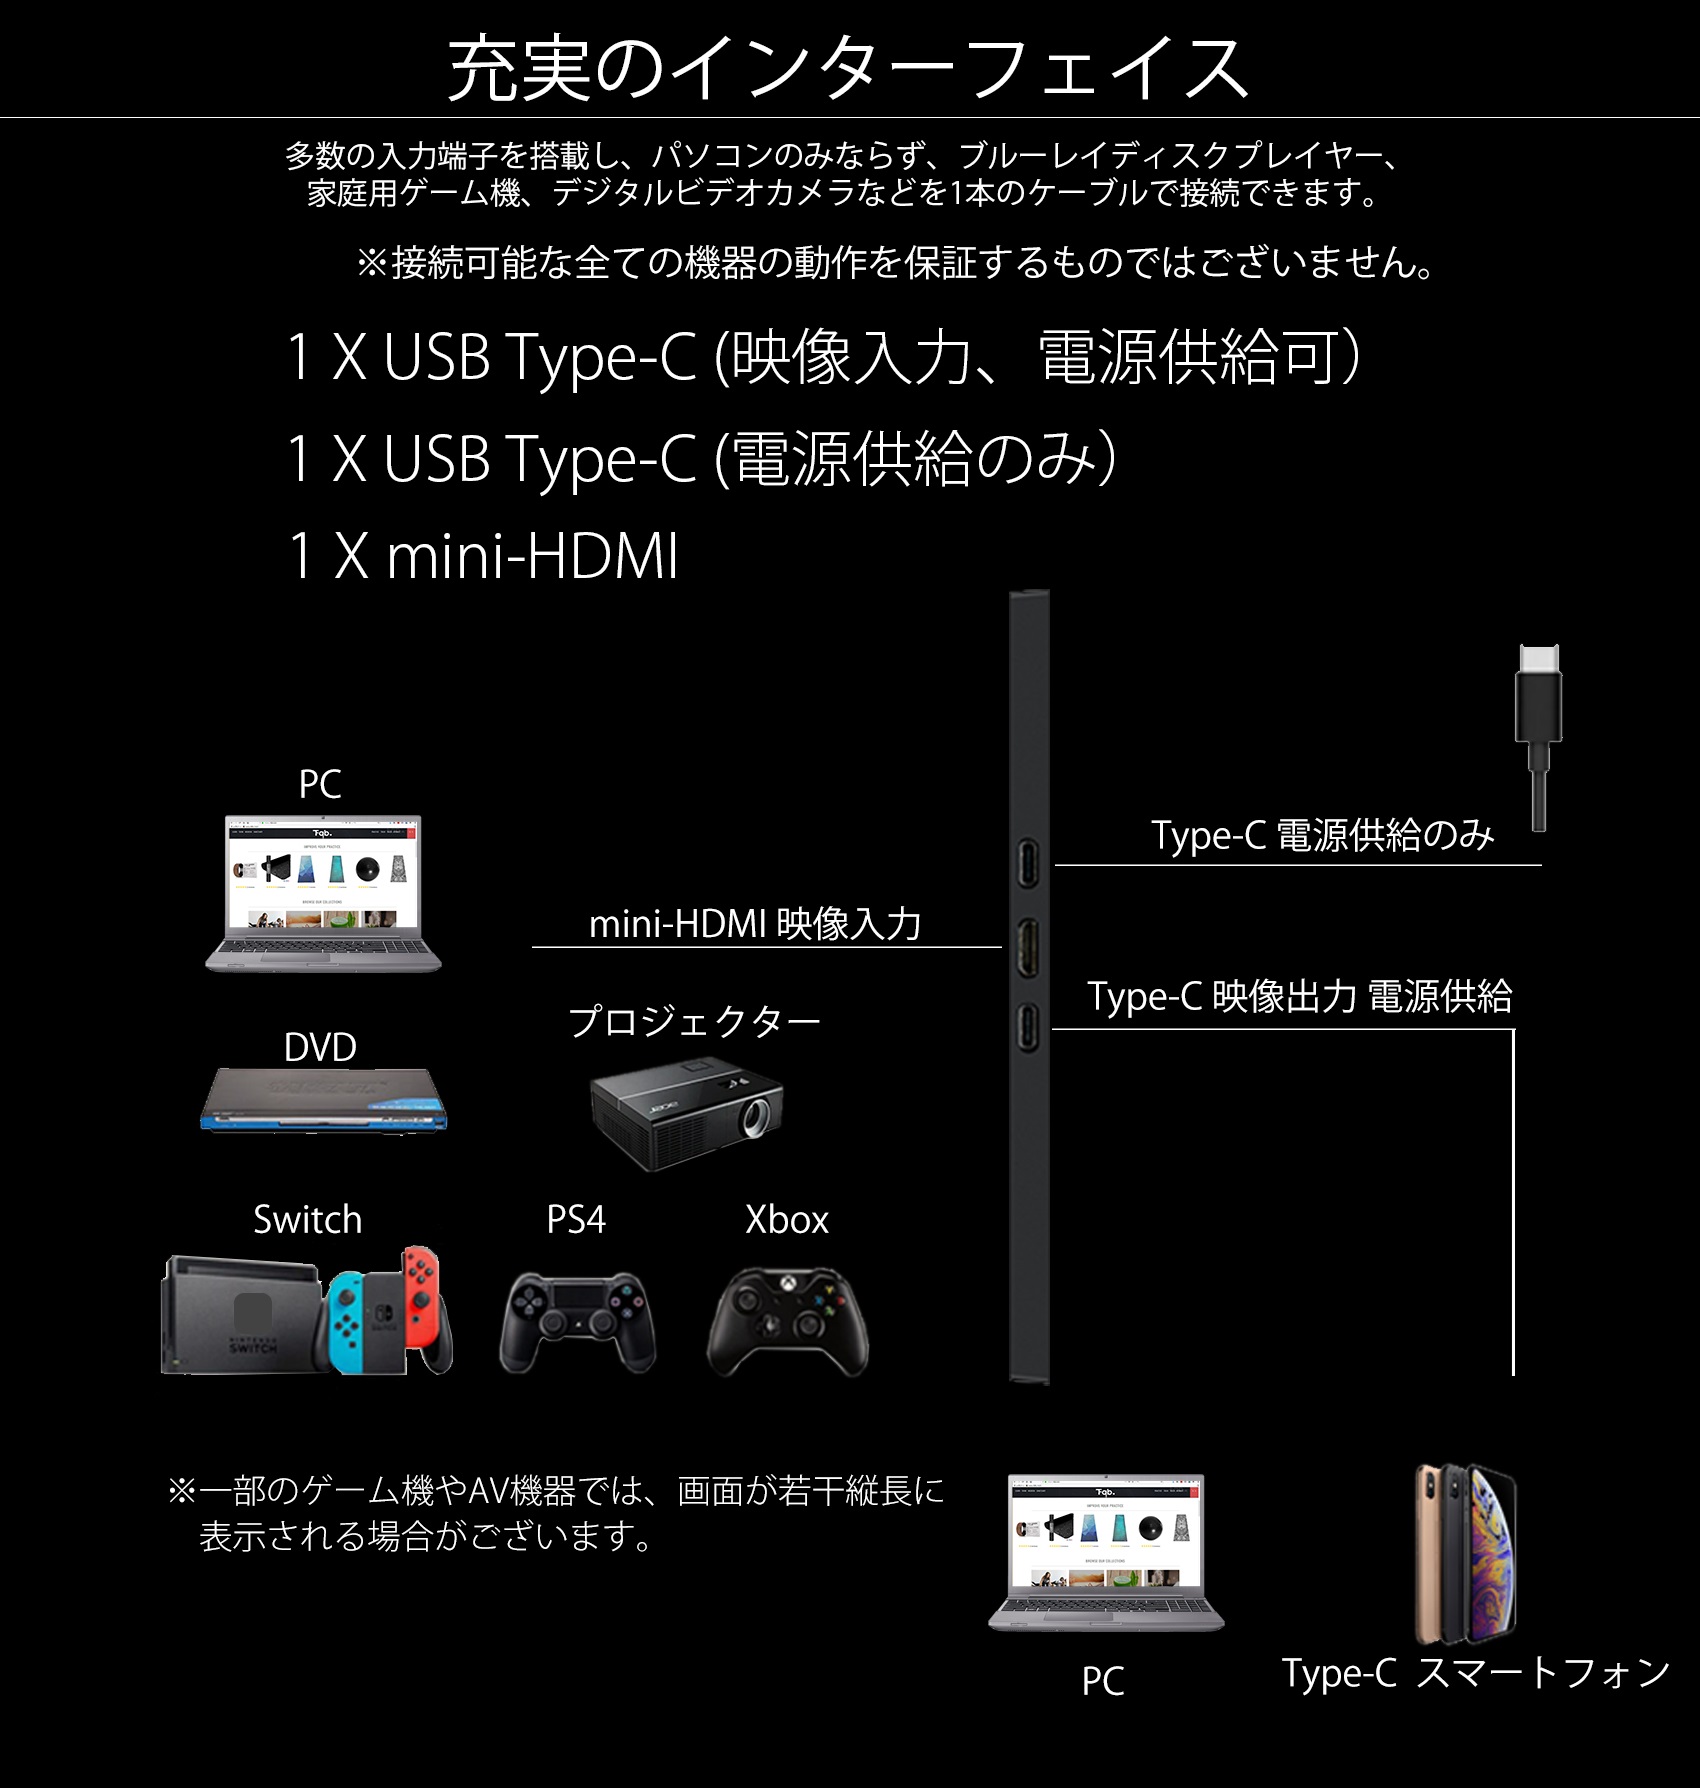 JAPANNEXT JN-MD-IPS1010HDR 10.1型 モバイルディスプレイ HDR 